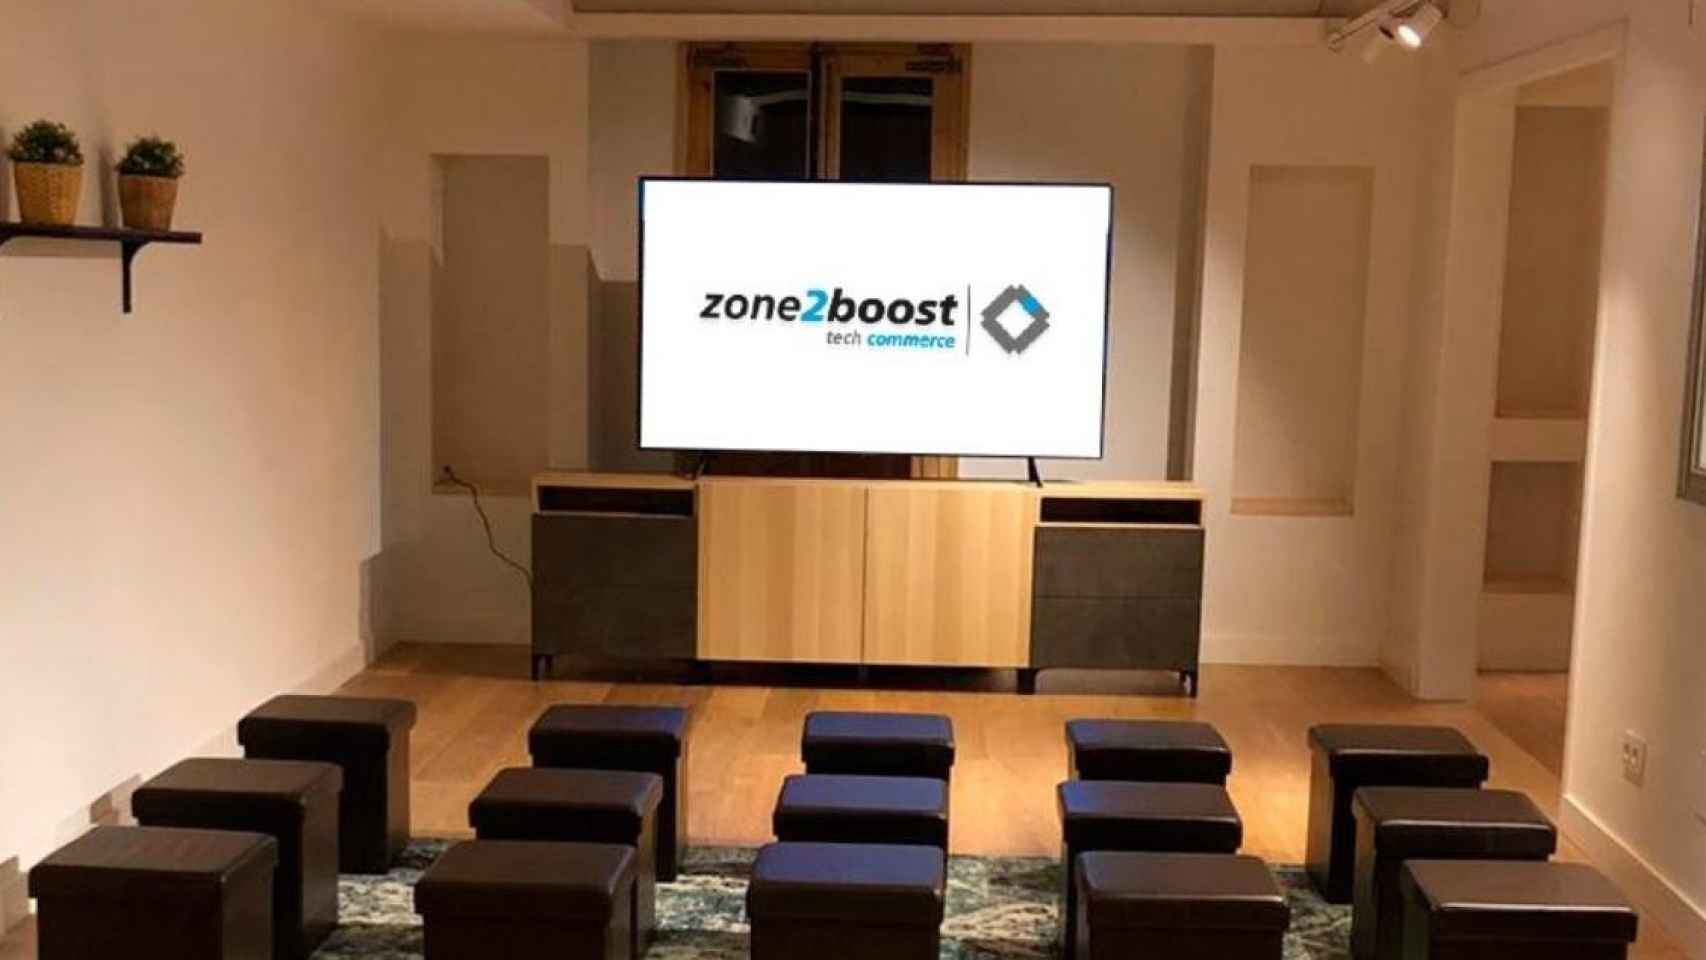 Sala de presentaciones de zone2boost, programa impulsado por Caixabank, Visa, Global Payments y Worldline / CAIXABANK